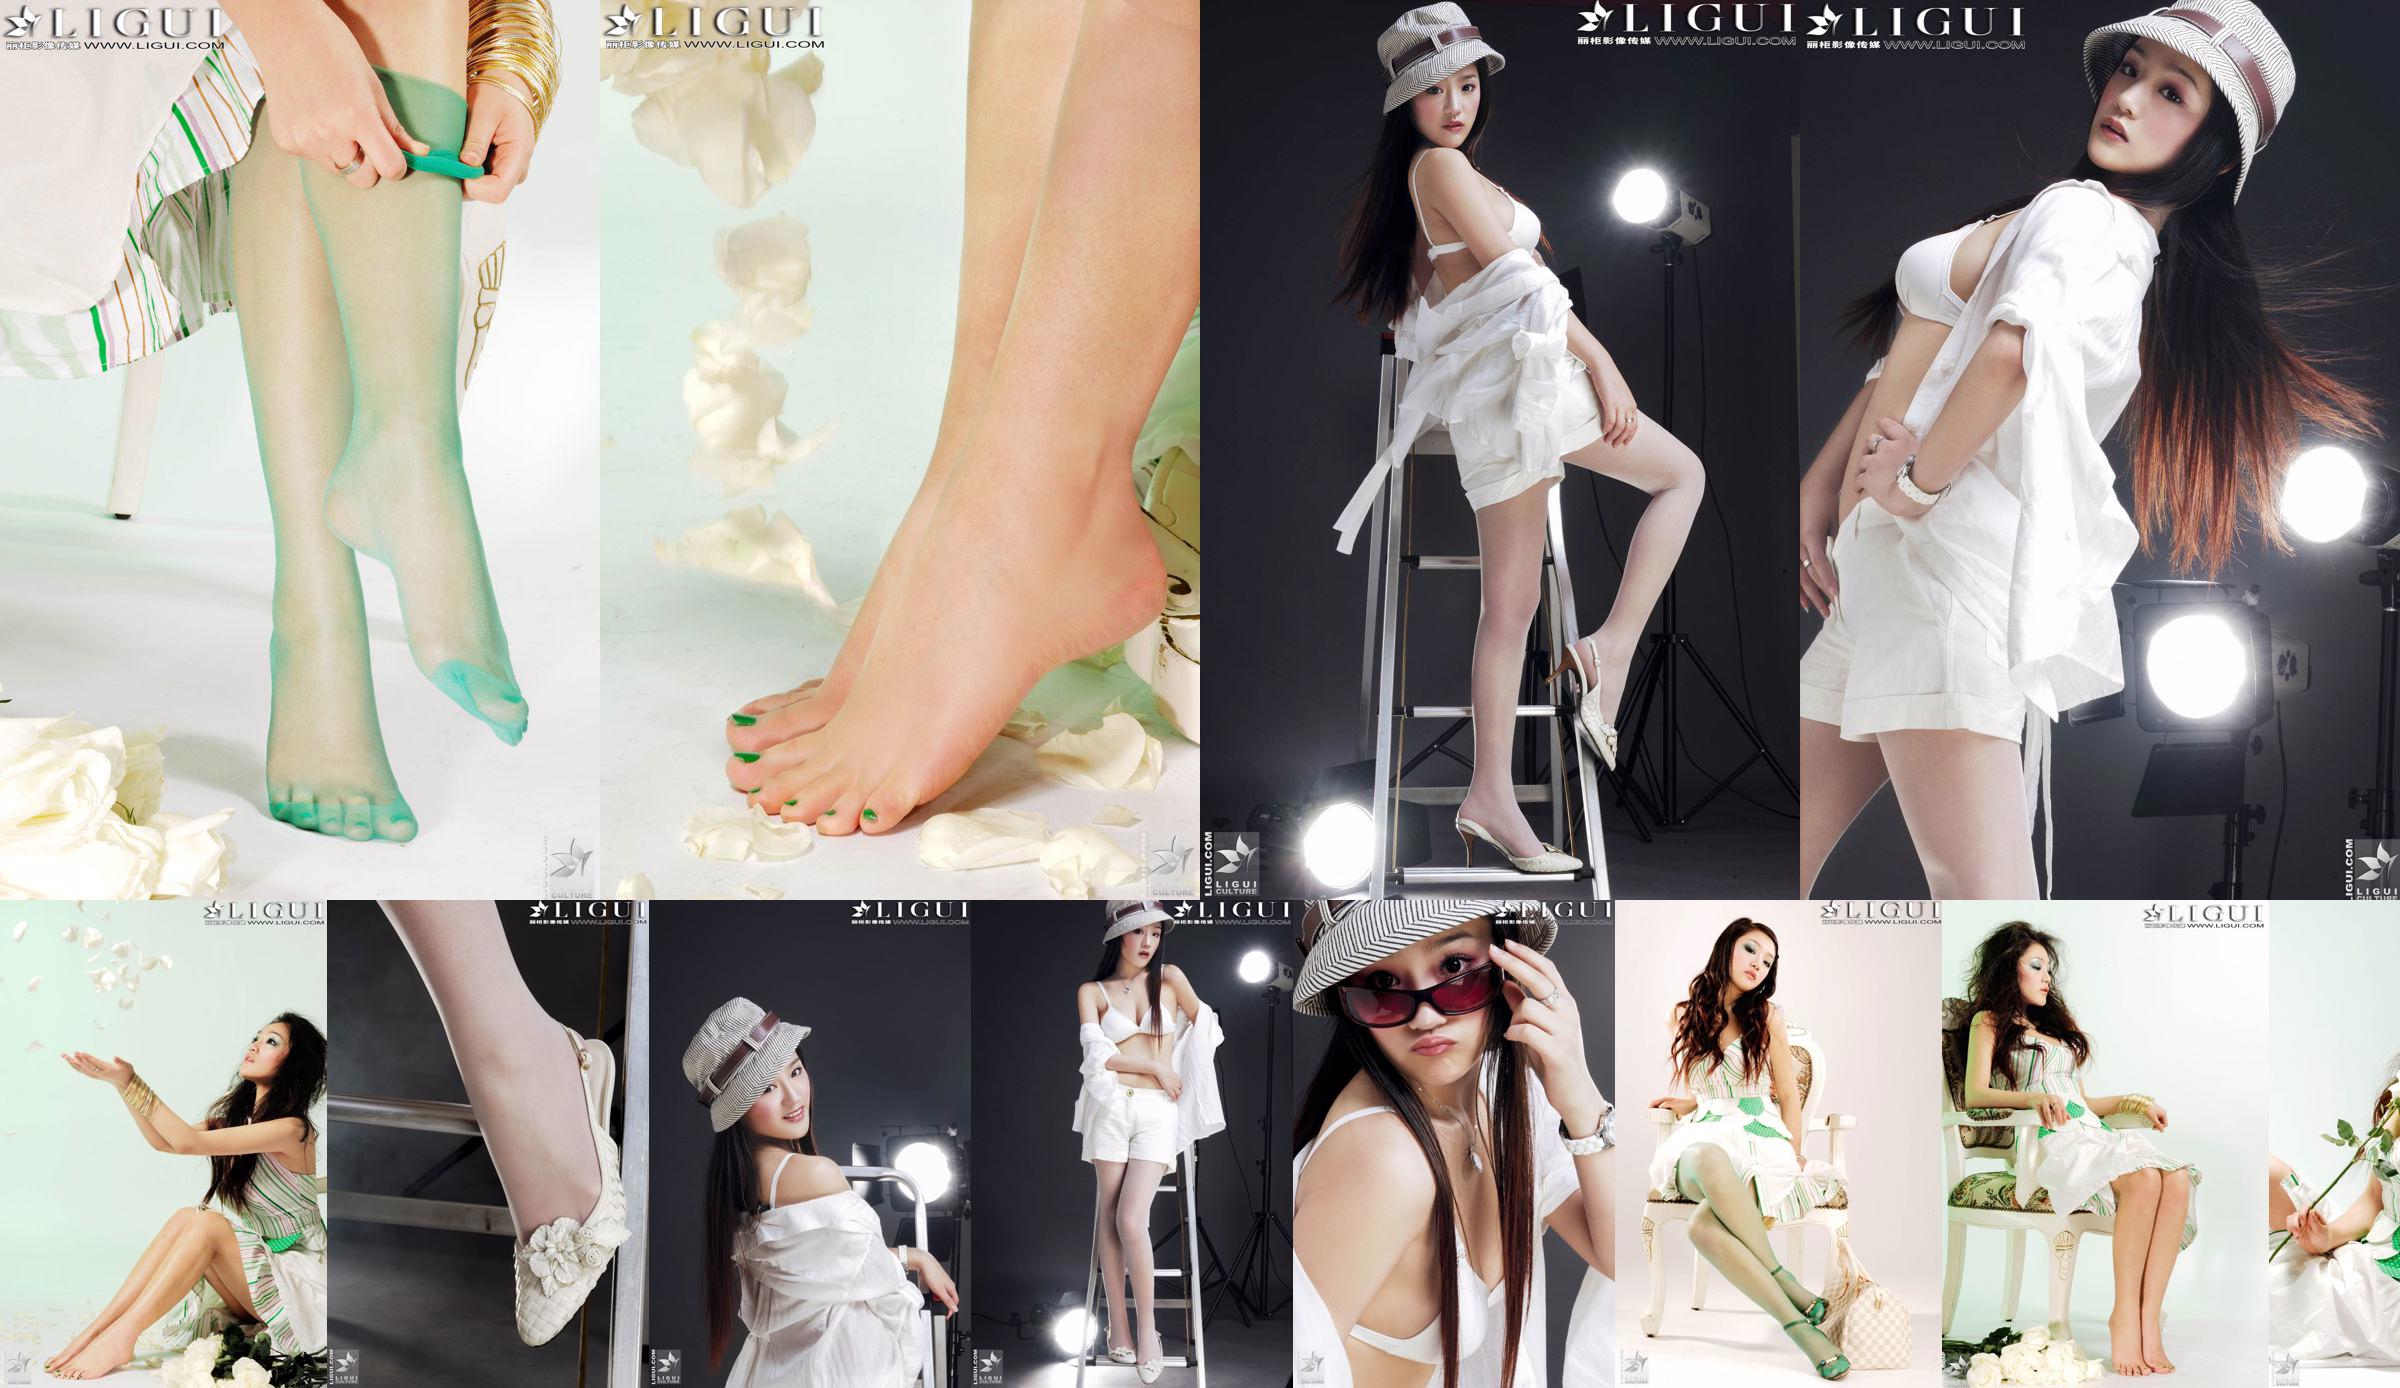 [丽 柜 贵 foot LiGui] Фотография красивых ног и шелковых ступней модели Чжан Цзинъянь "Модная ступня" No.4ff922 Страница 13